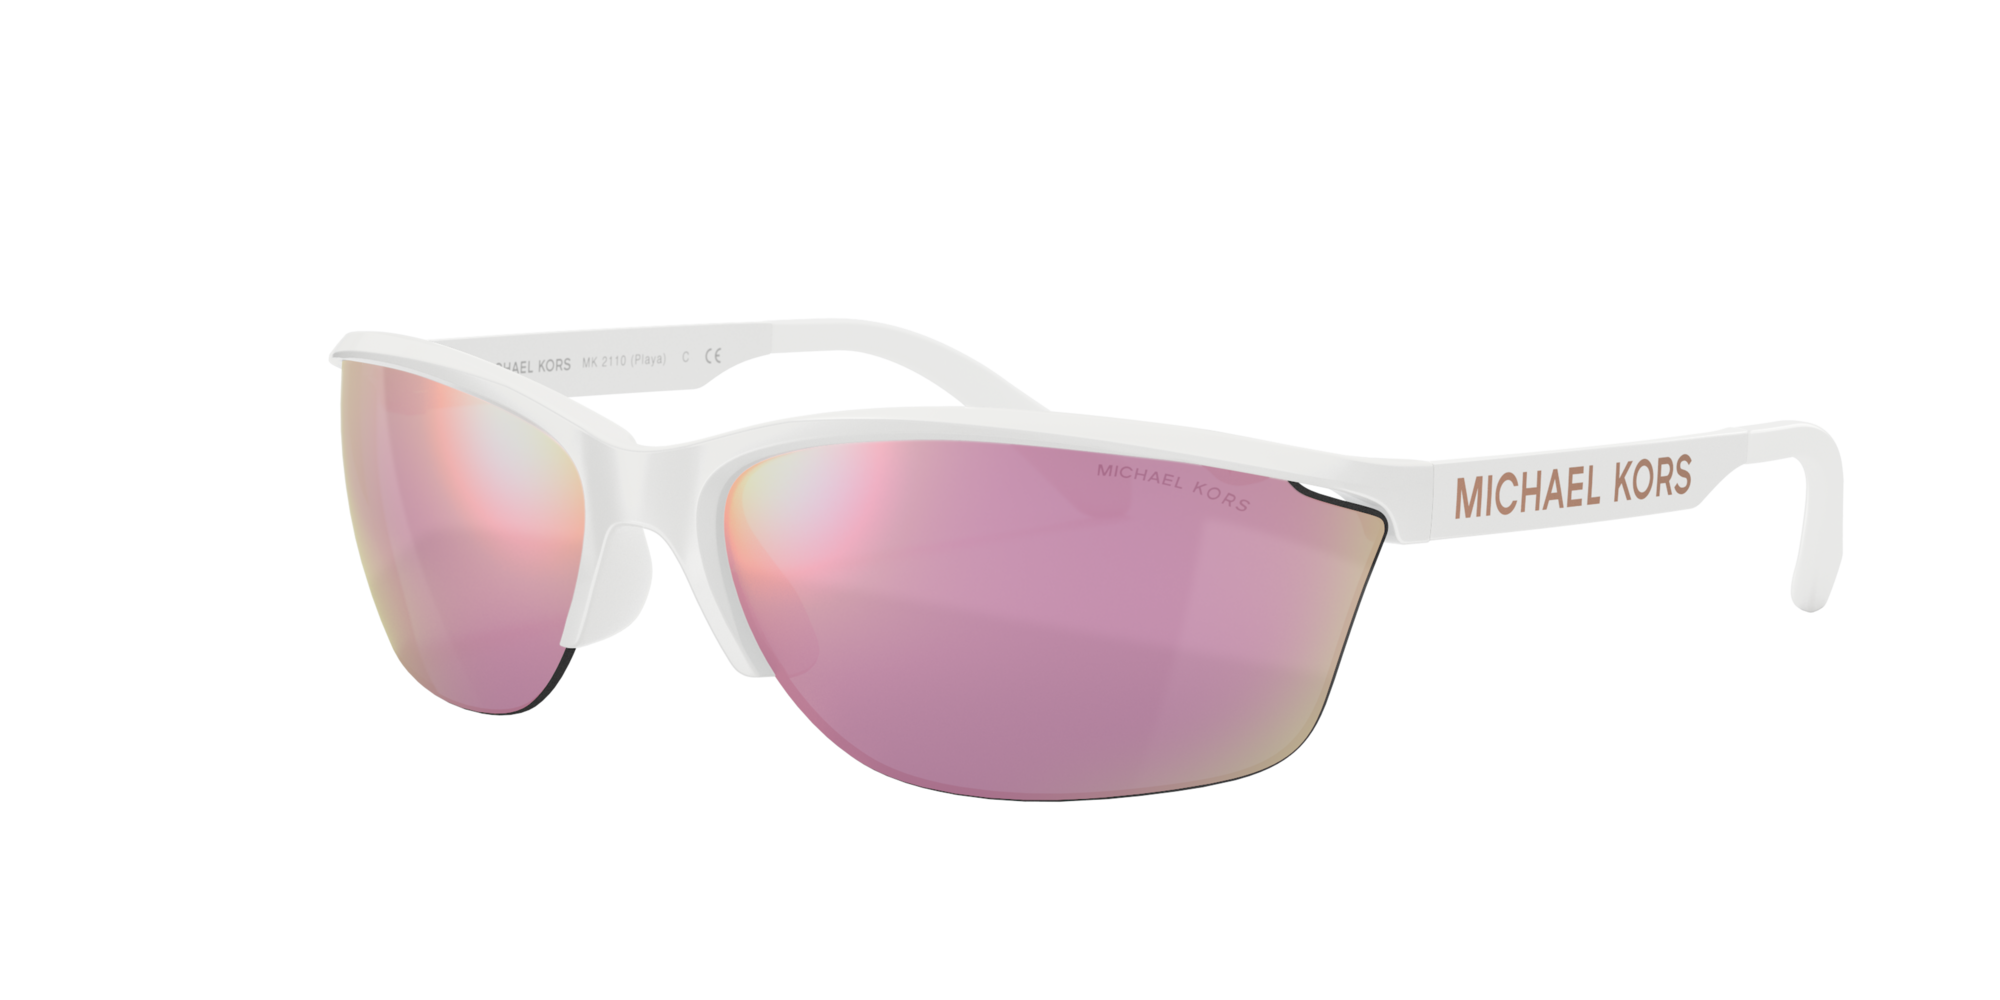 michael kors sunglasses white frame